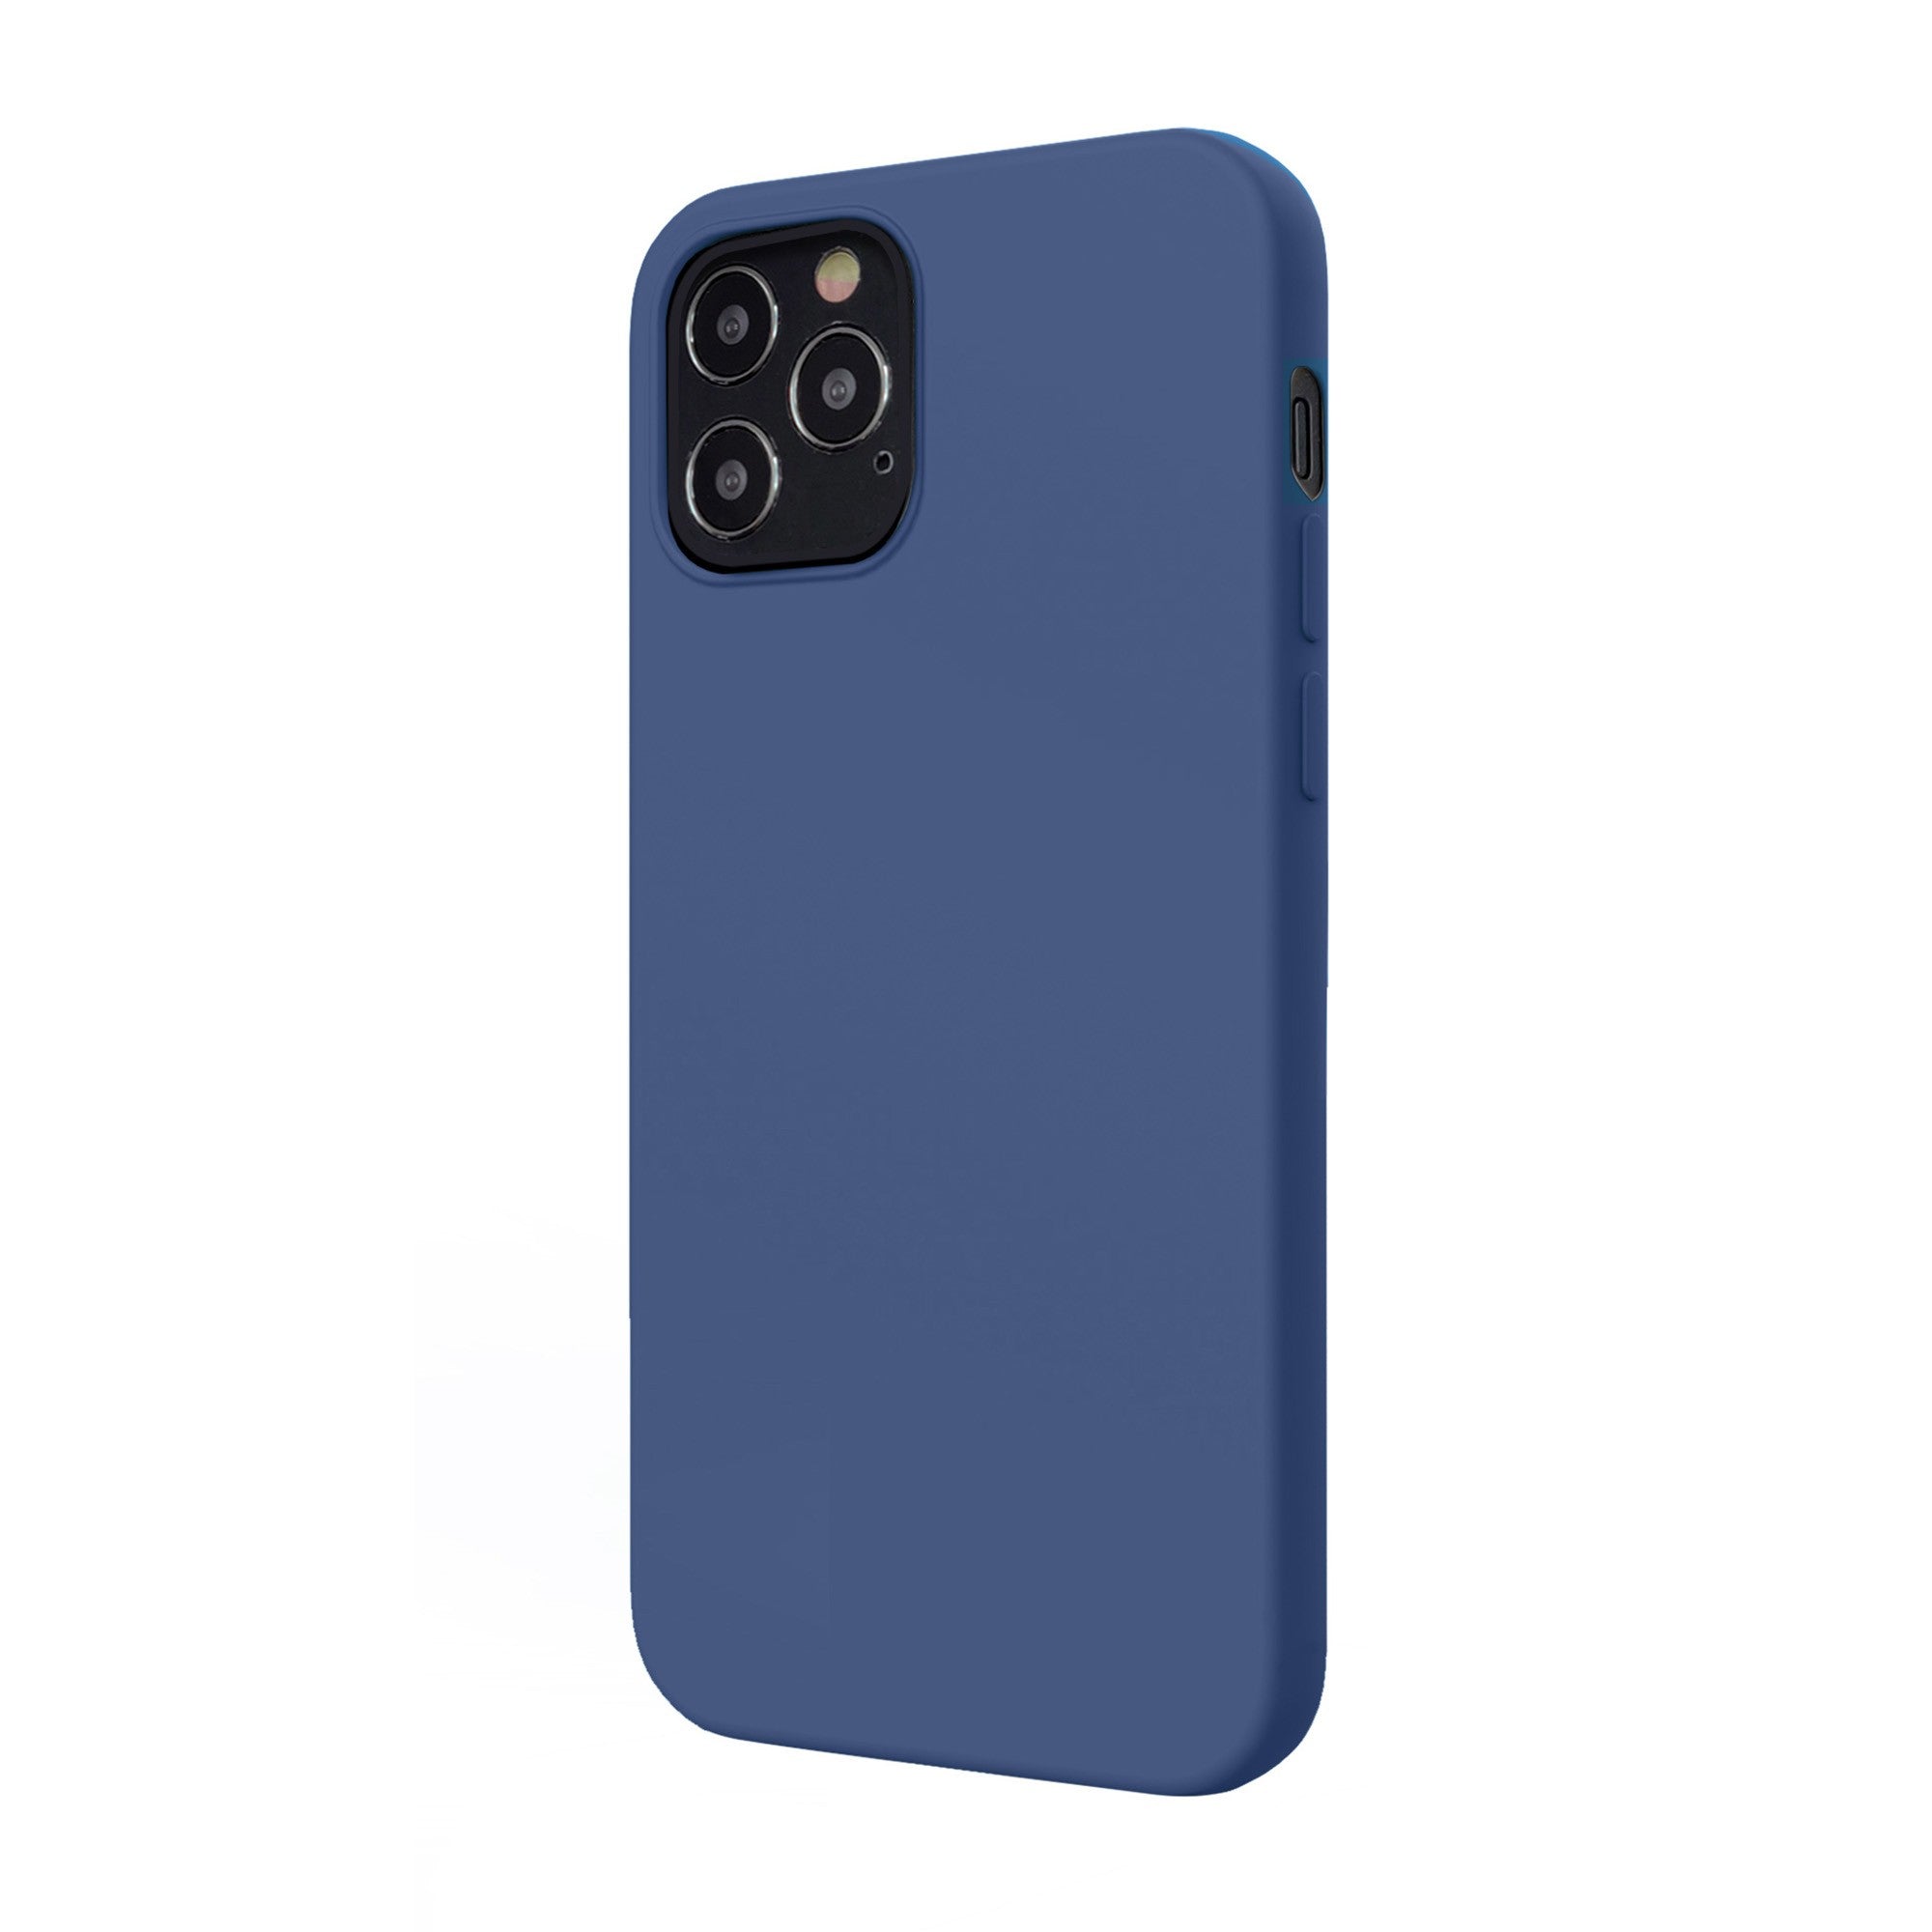 iPhone 12/12 Pro Uunique Blue Liquid Silicone Case - 15-07613